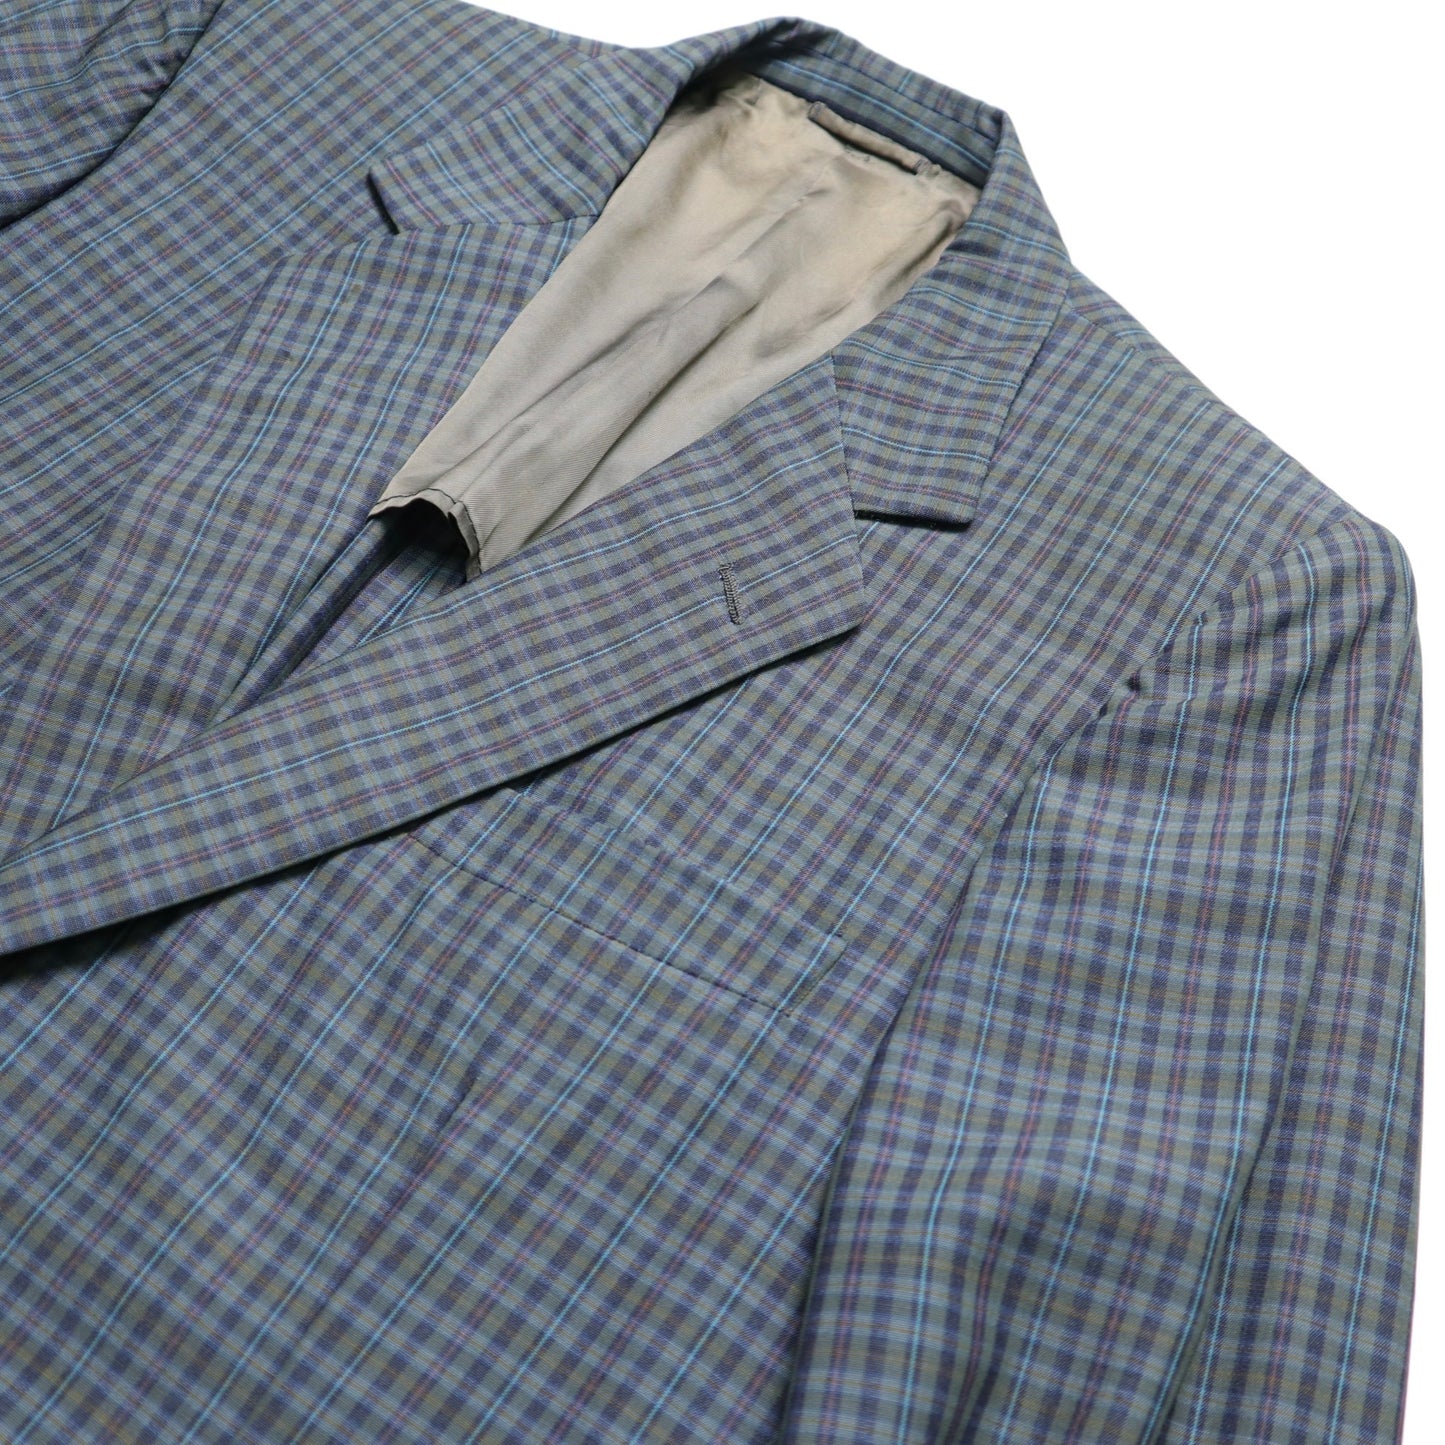 1990s Burberrys 藍灰色格紋西裝外套